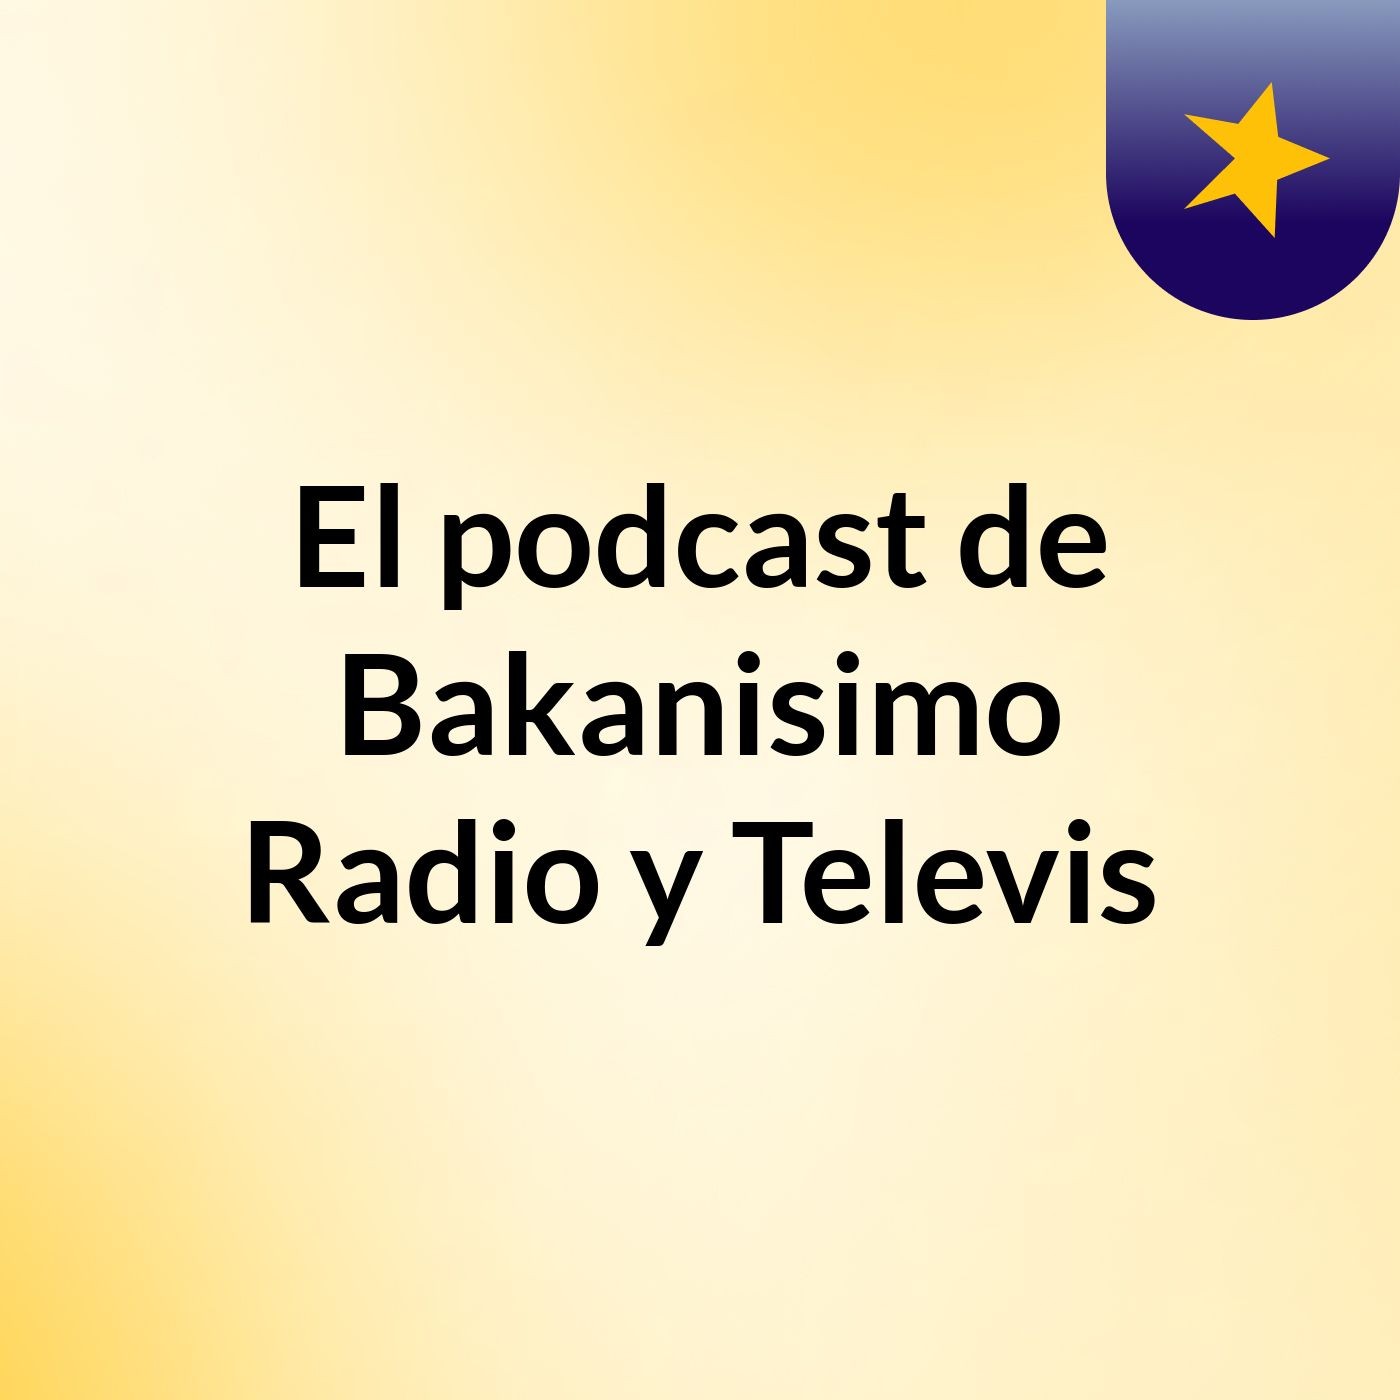 El podcast de Bakanisimo Radio y Televis